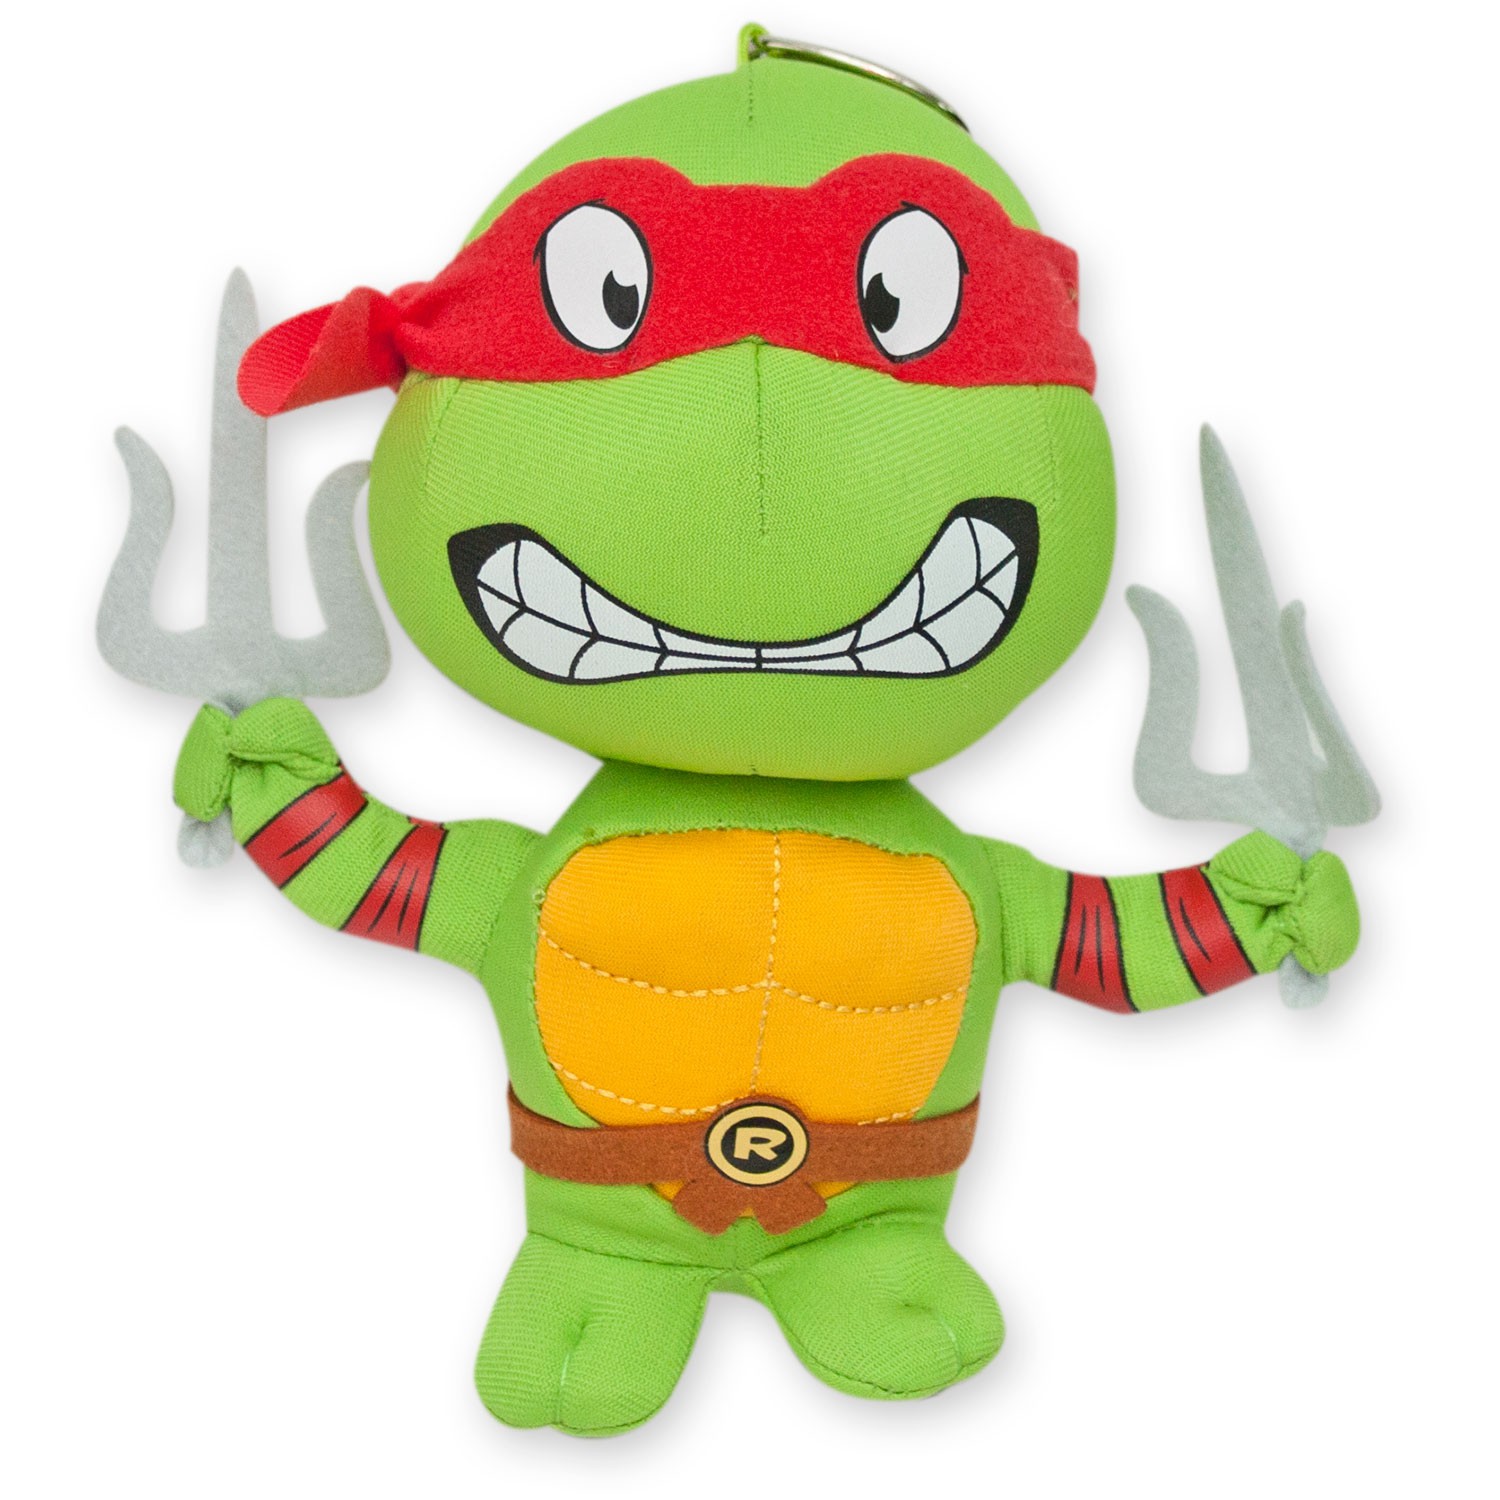 Teenage Mutant Ninja Turtle Plush Raph